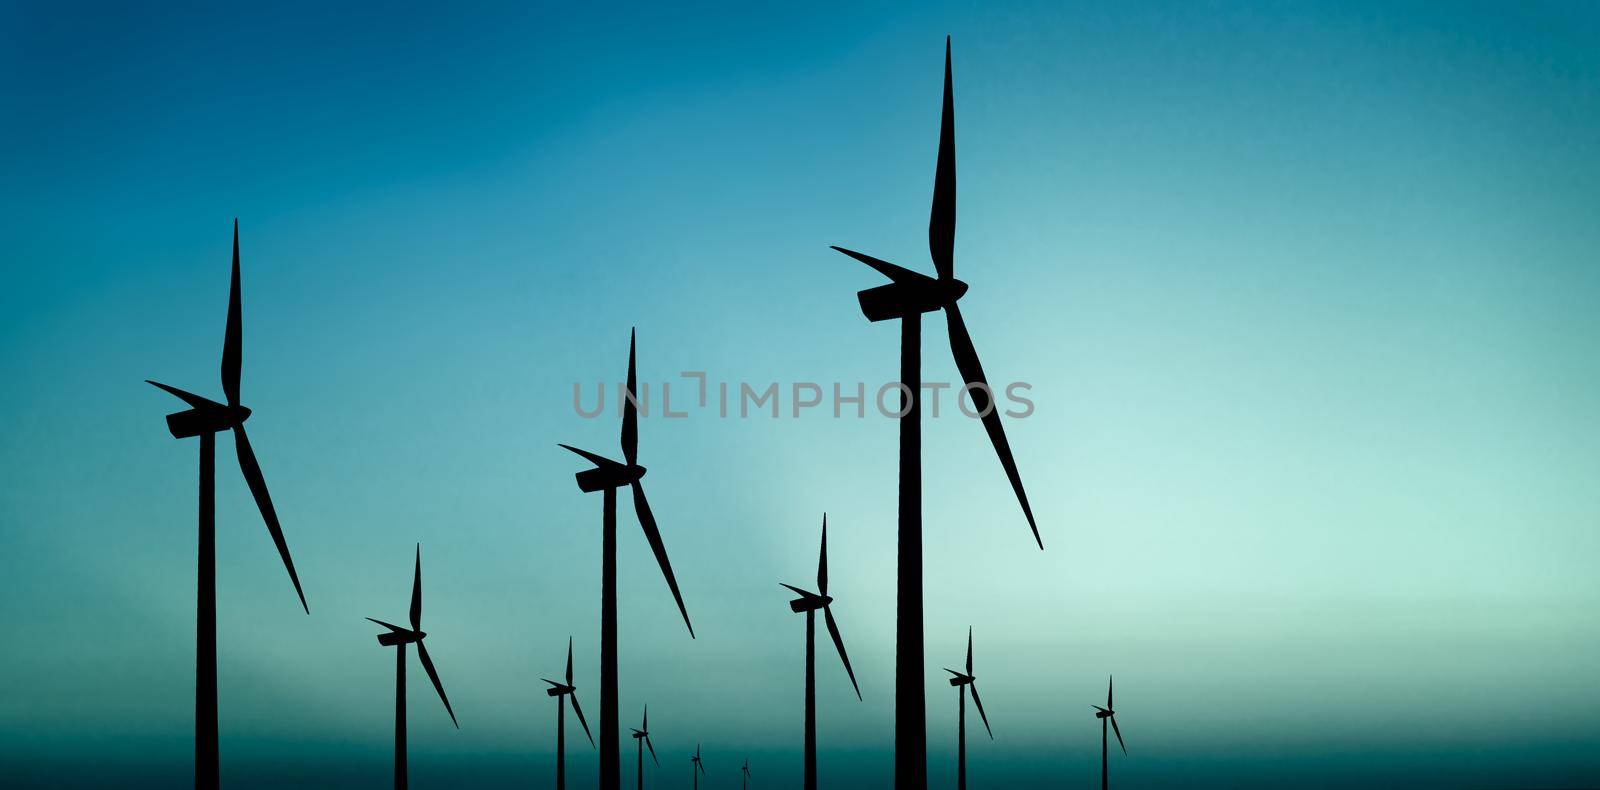 Wind turbines silhouette by Wajan